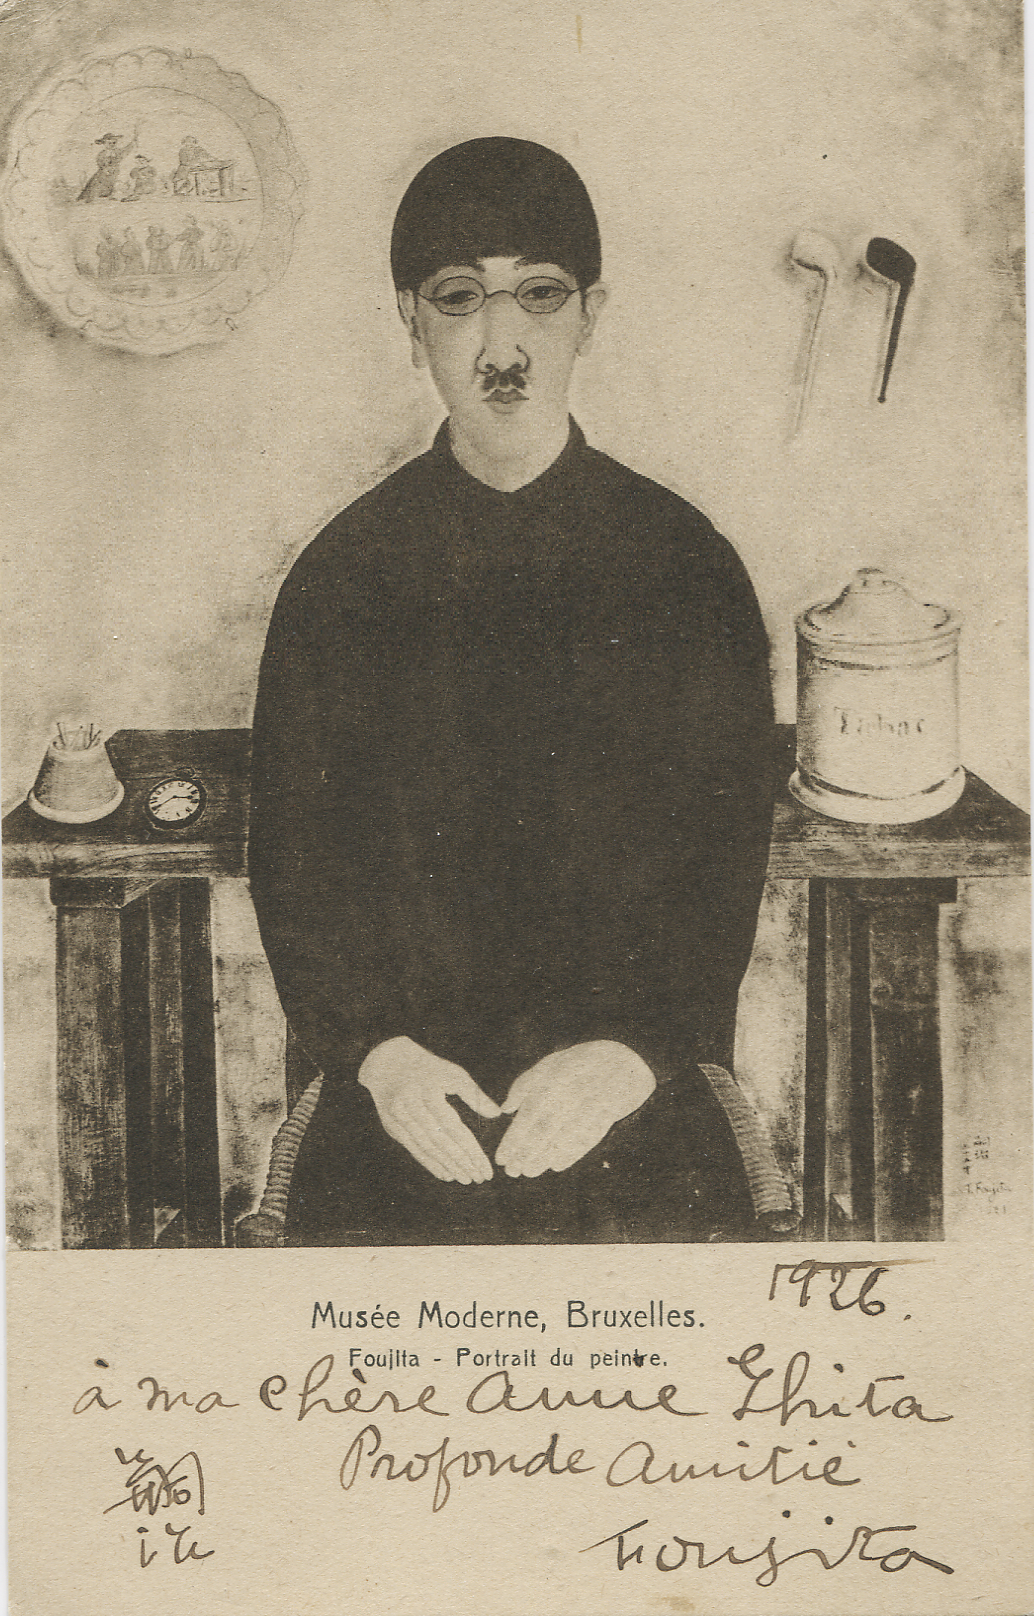 Carte postale adressée par Foujita à Ghita Luchairevers 1925 - Autoportrait, Encre de Chines sur papier © Archives du Catalogue Général raisonné de l'Œuvre de T. L. Foujita